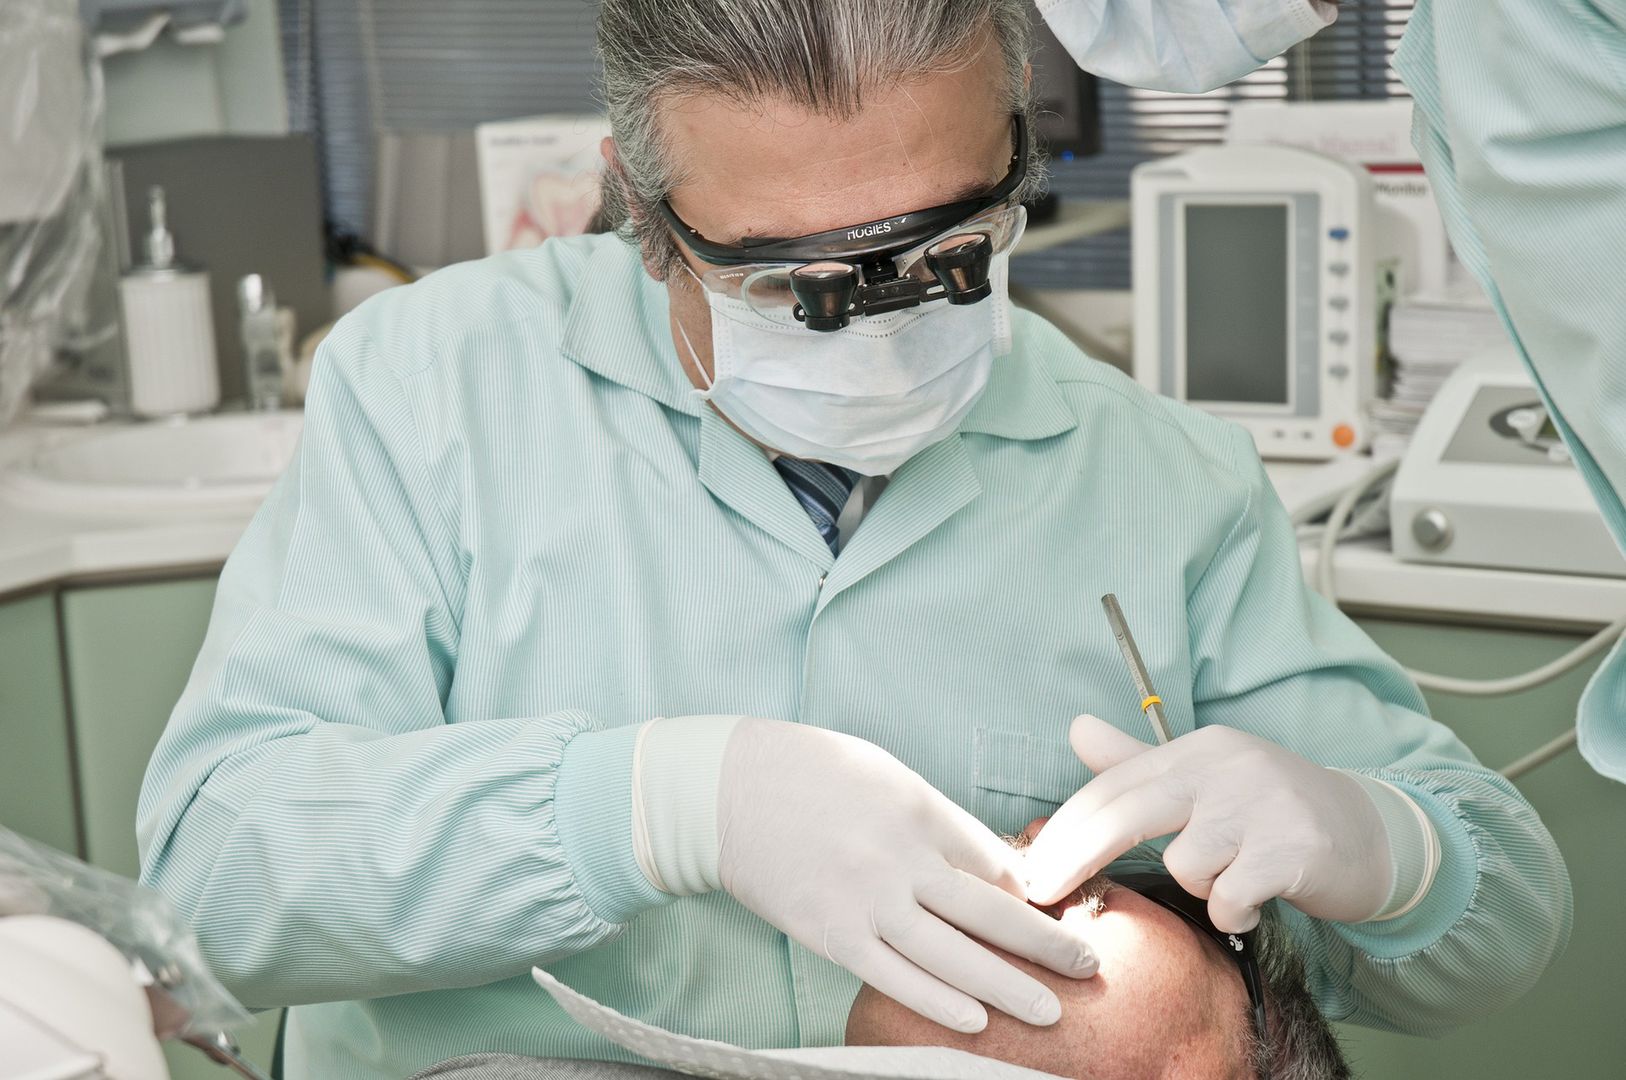 Dentysta zabrał głos. Pacjent: "Ceny wizyt u stomatologa przerażają"